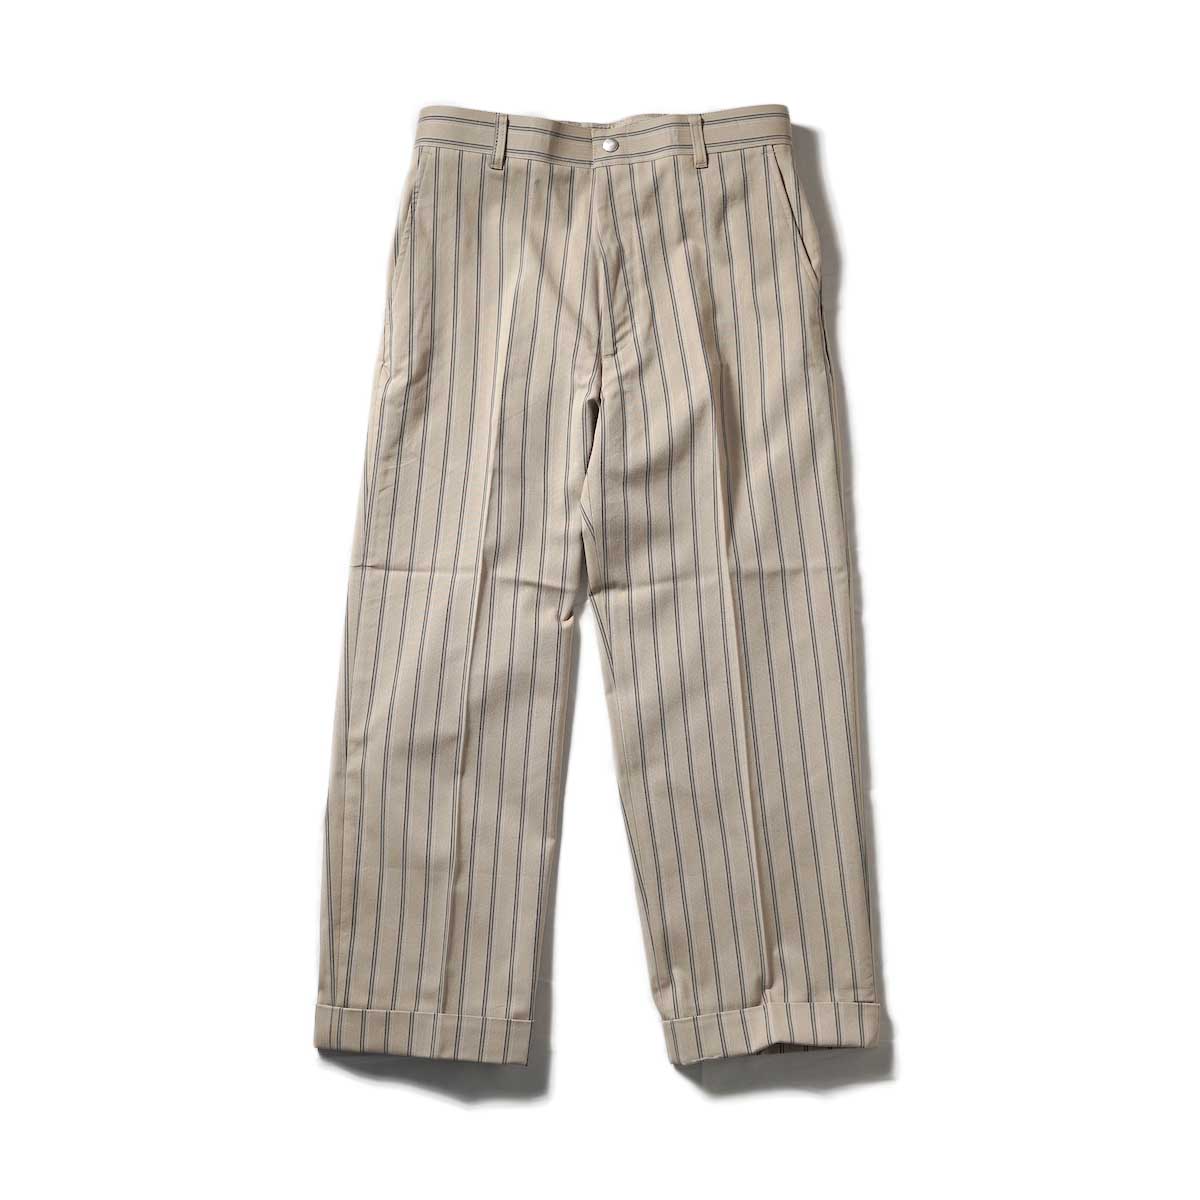 Willow Pants / P-009 - Dead Stock Beige Stripe Pants